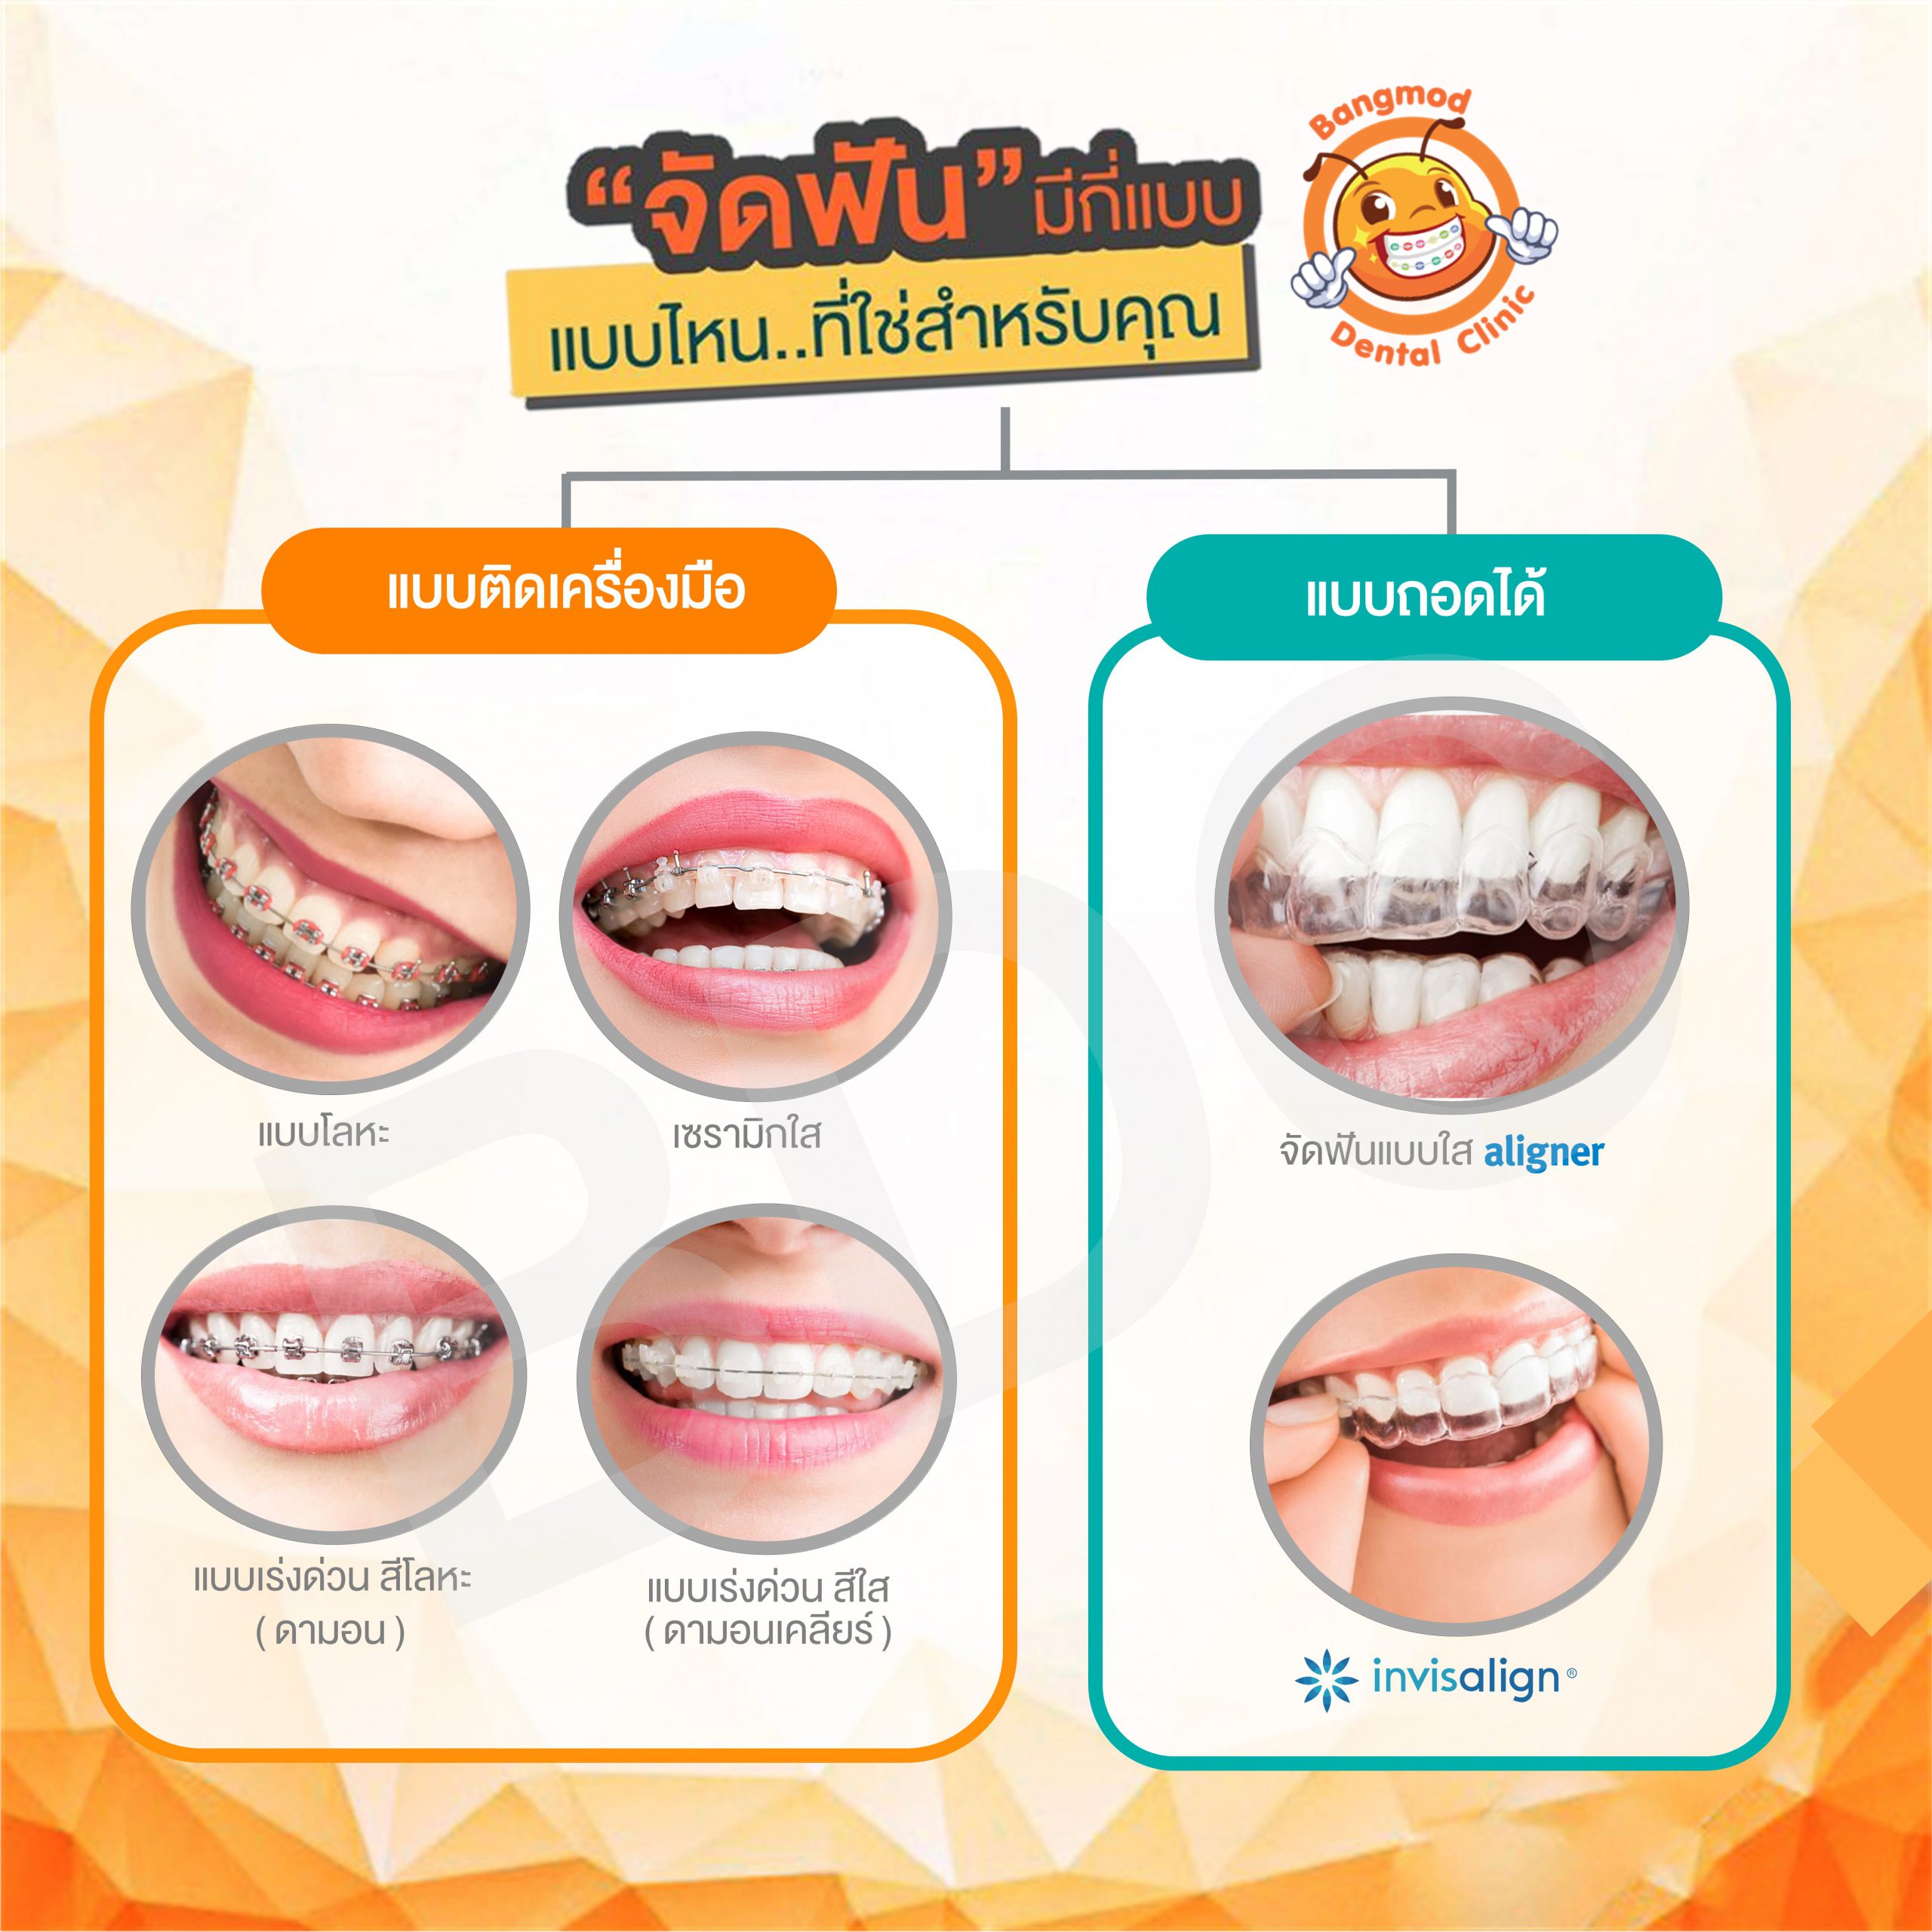 หมอฟันที่เก่งที่สุดในประเทศไทย